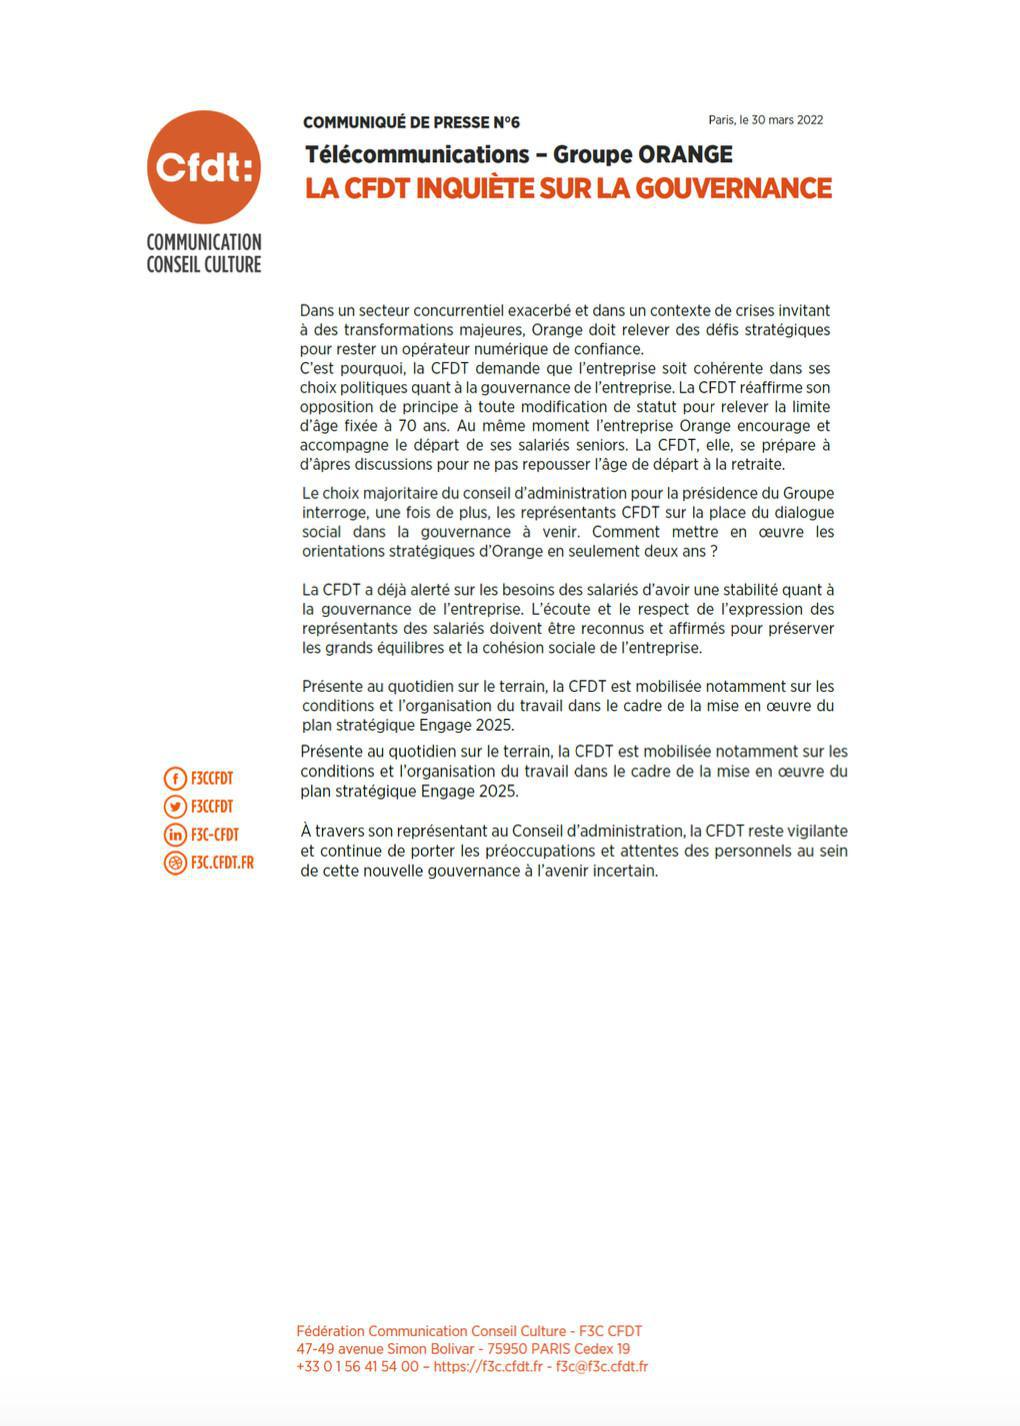 Communiqué de Presse N°6 : la CFDT inquiète sur la gouvernance - Paris, le 30 mars 2022